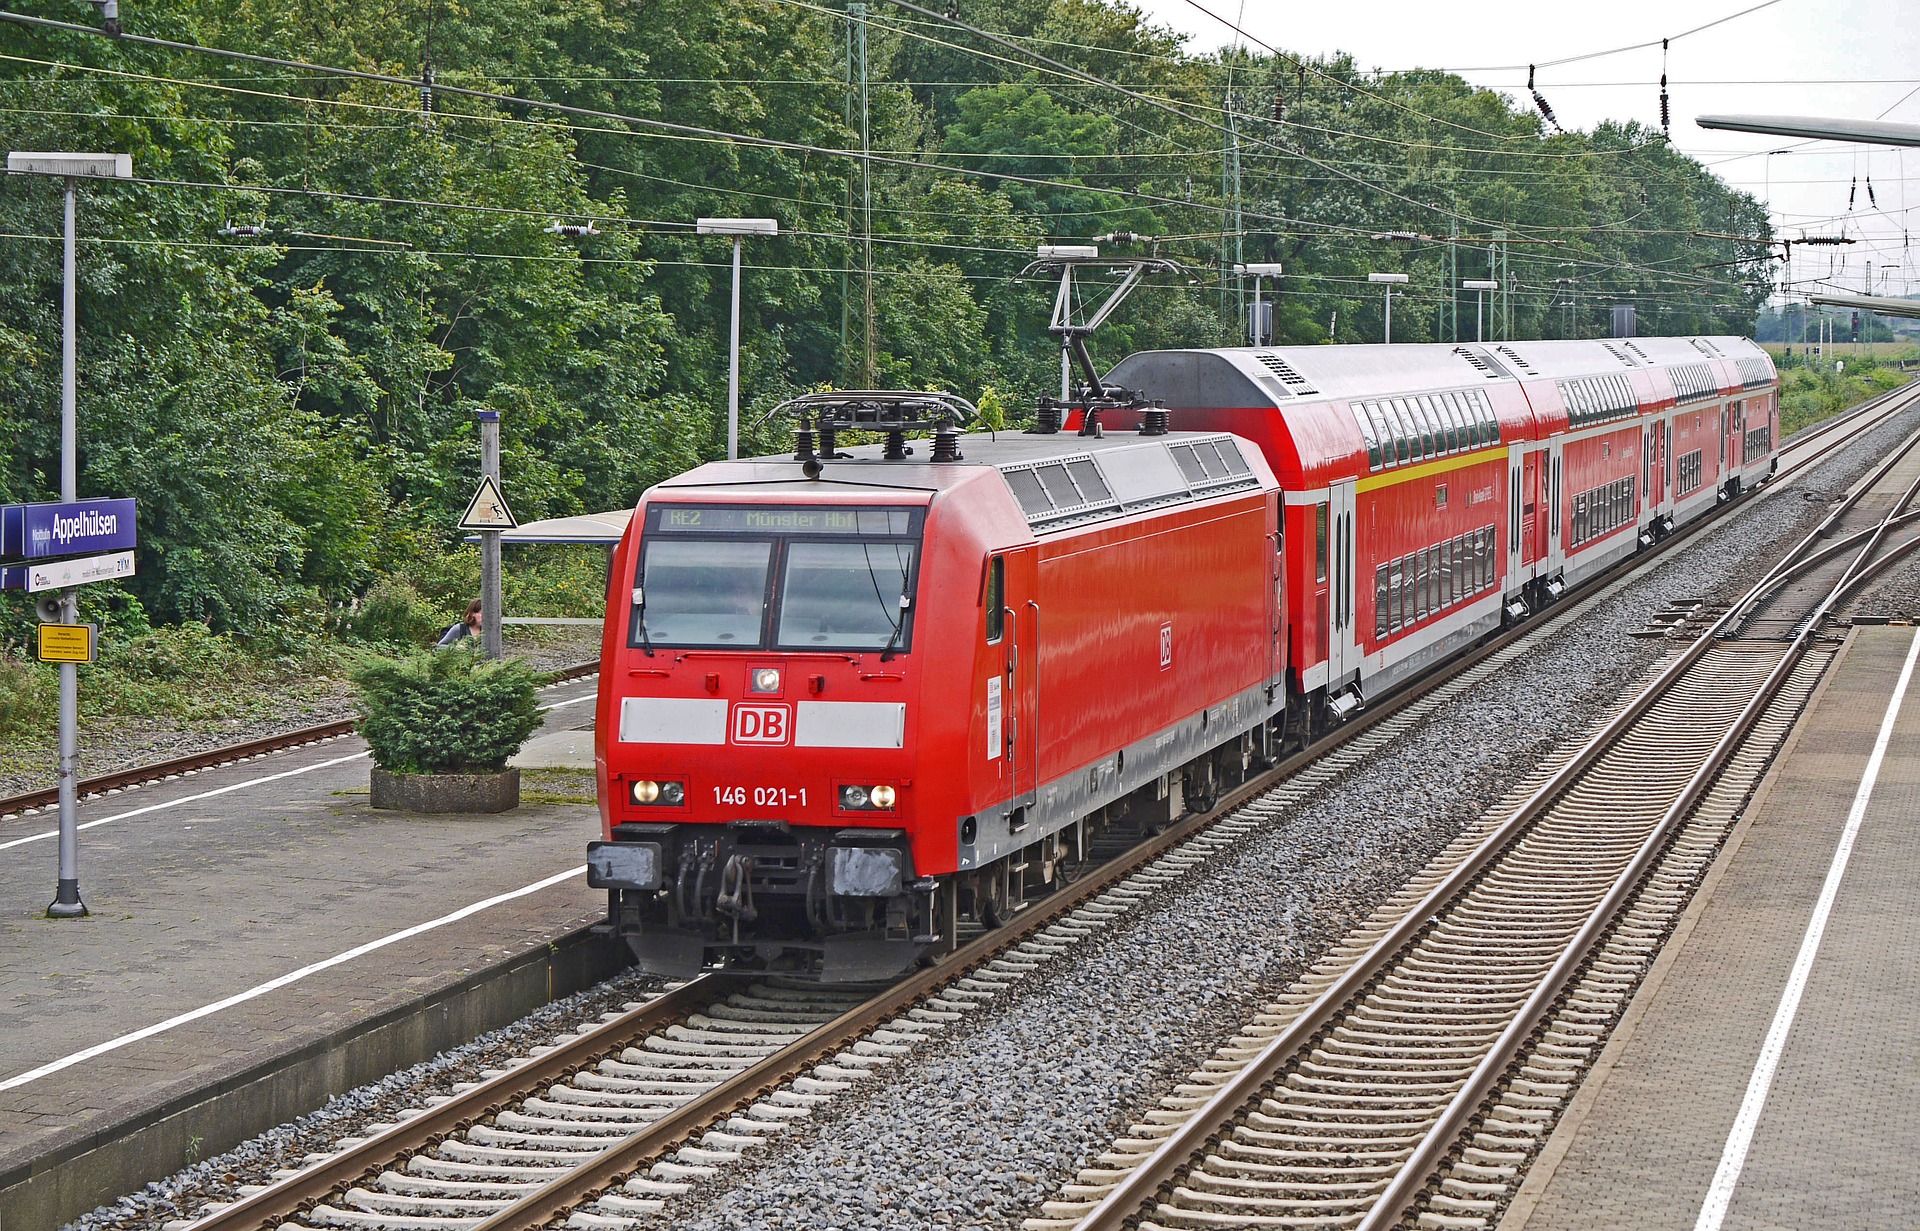 In Regionalzügen könnten in Zukunft mehr Studierende anzutreffen sein, Foto: Erich Westendarp / Pixabay